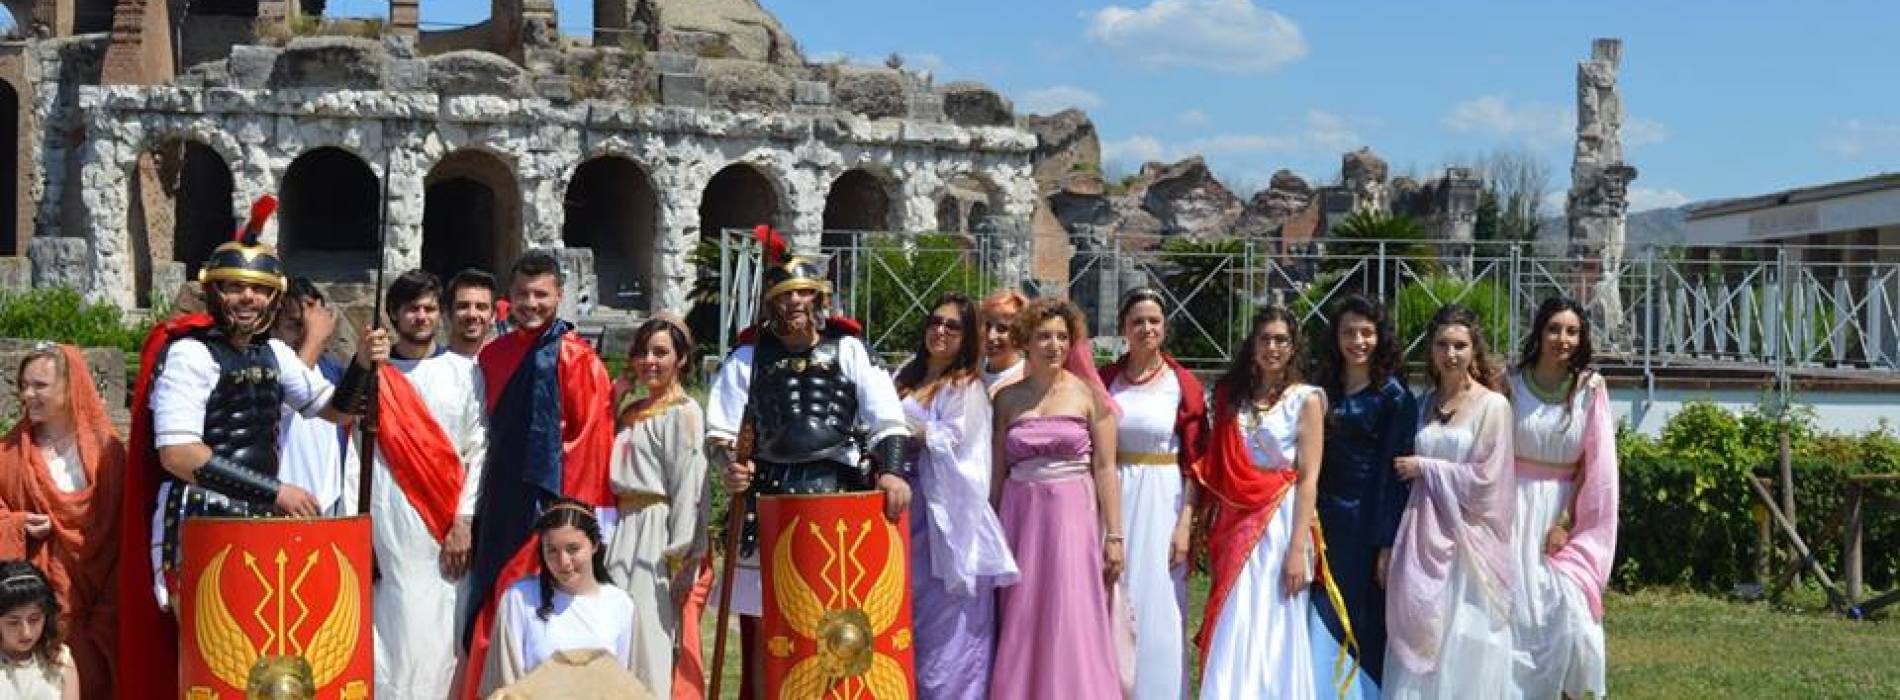 L’Università fa un flash mob, in abiti d’epoca nell’antica Capua